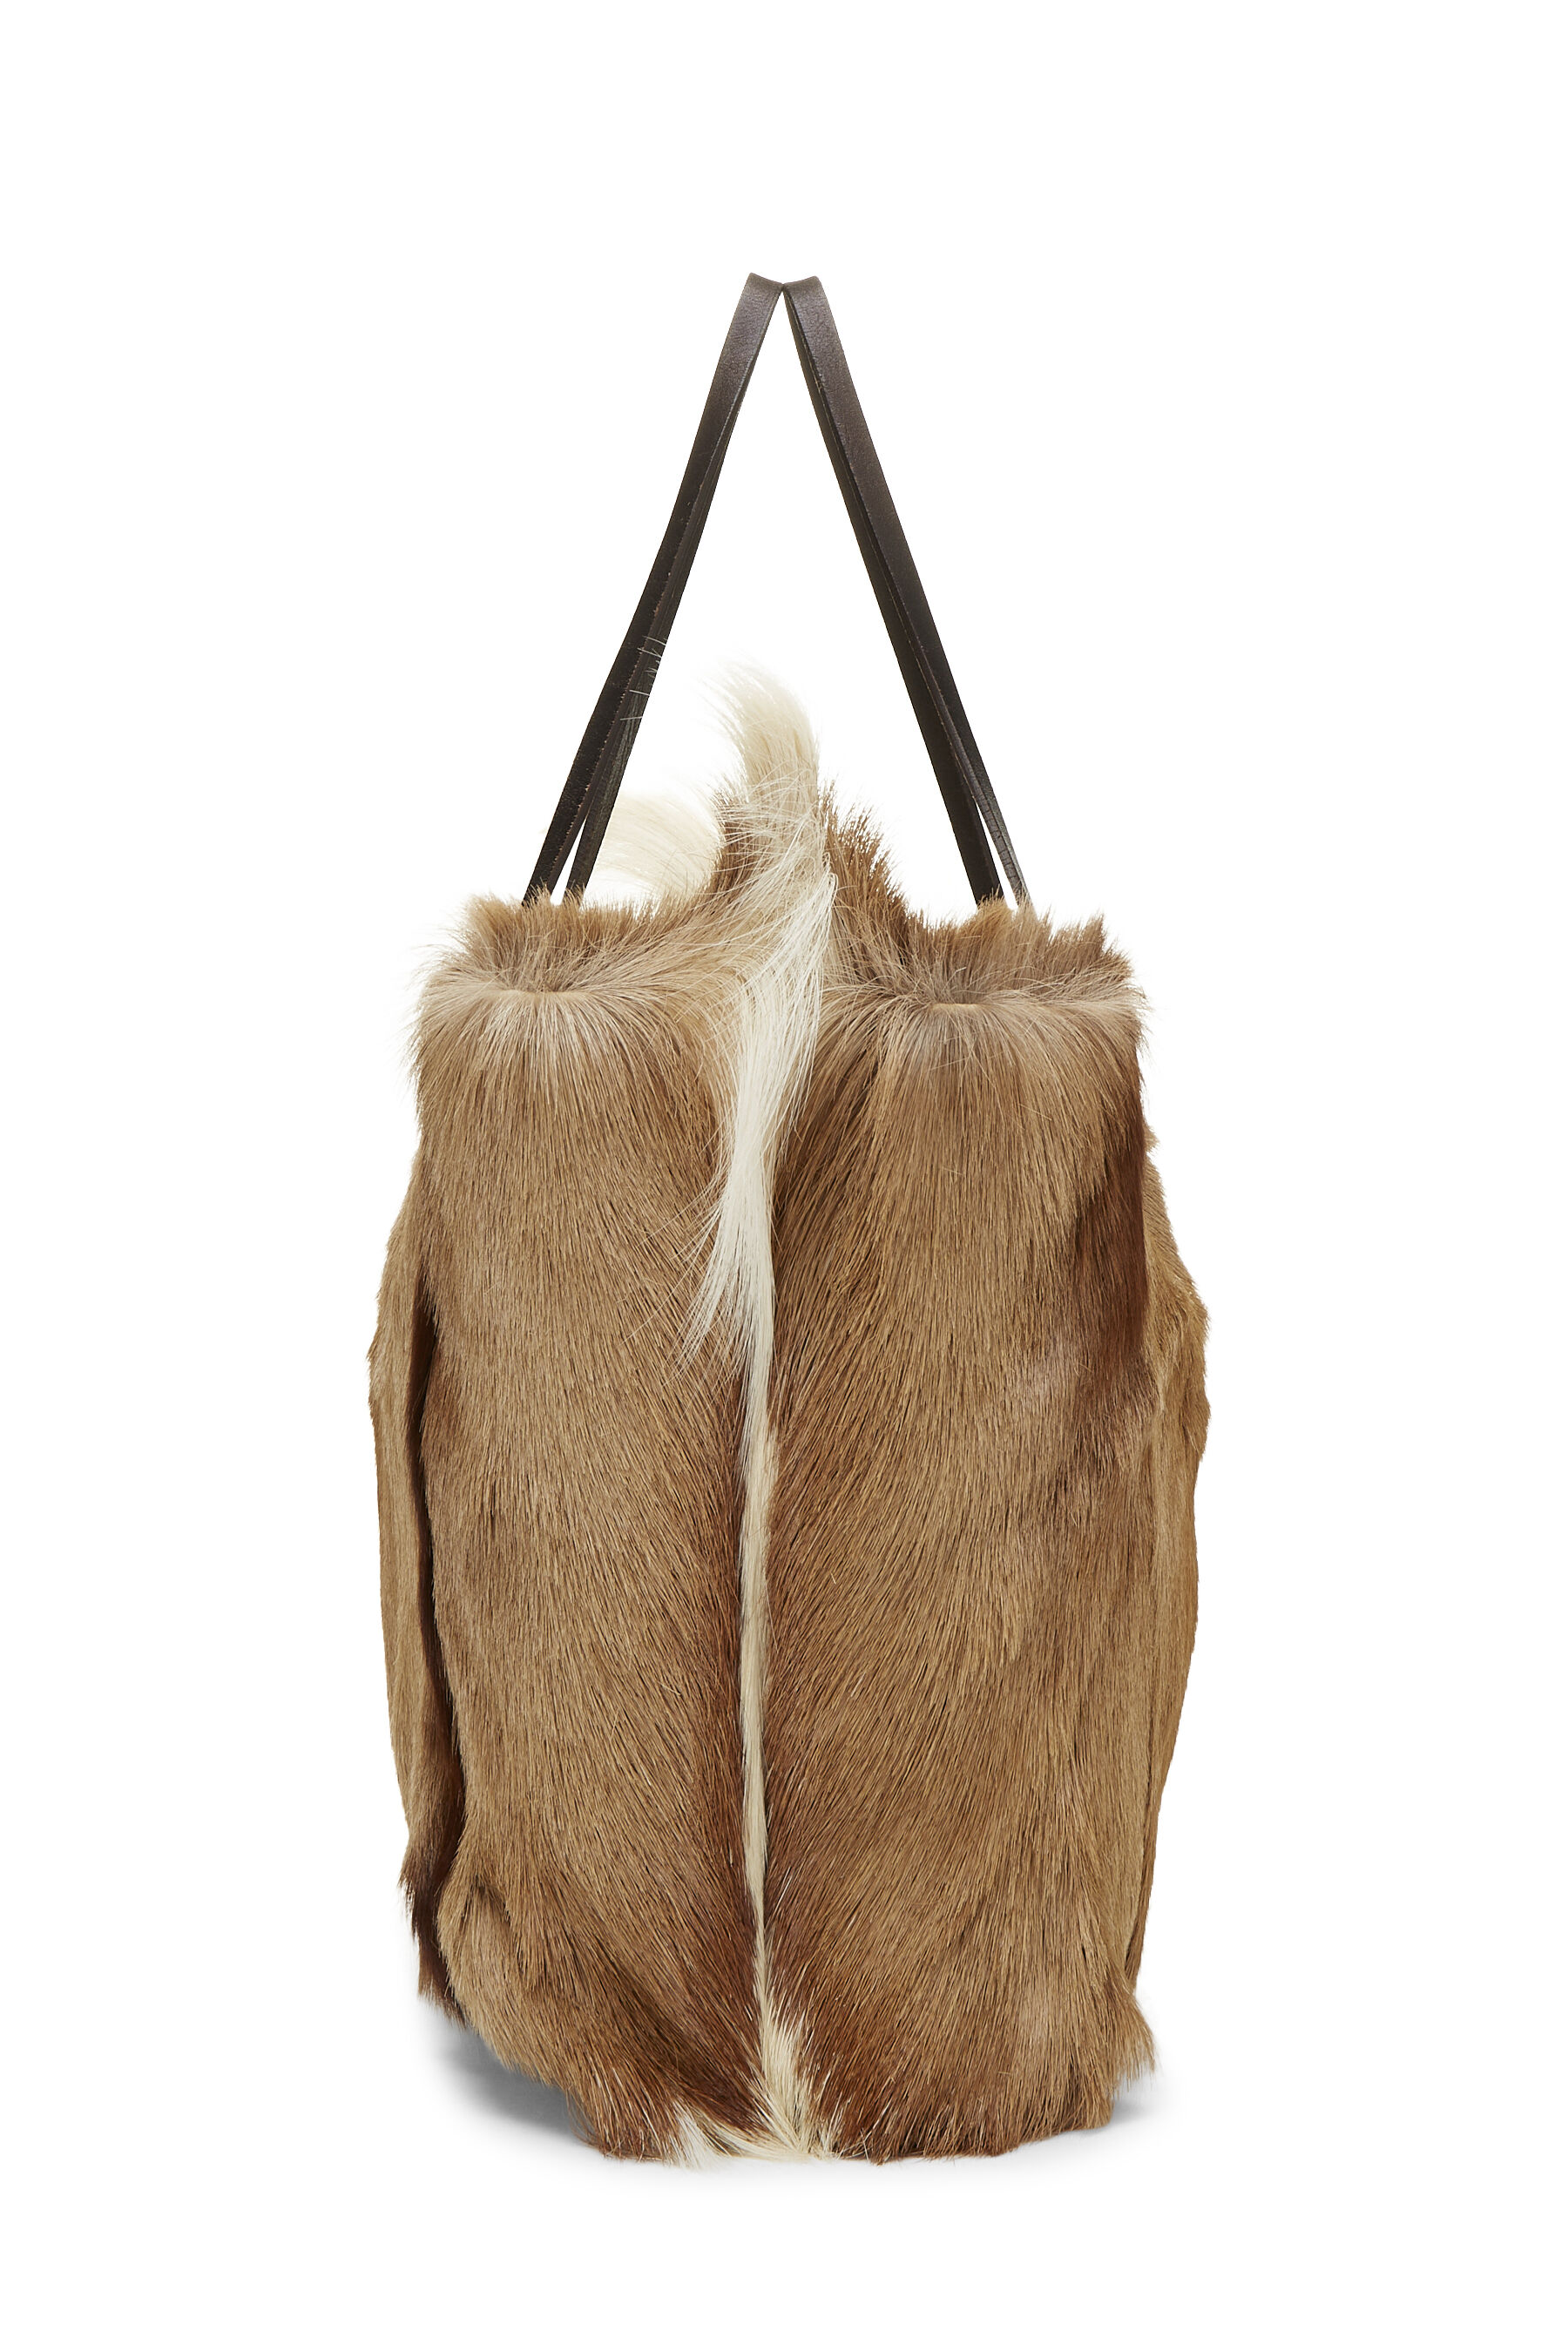 Fendi Brown Fur Tote Bag QBB05D160B001